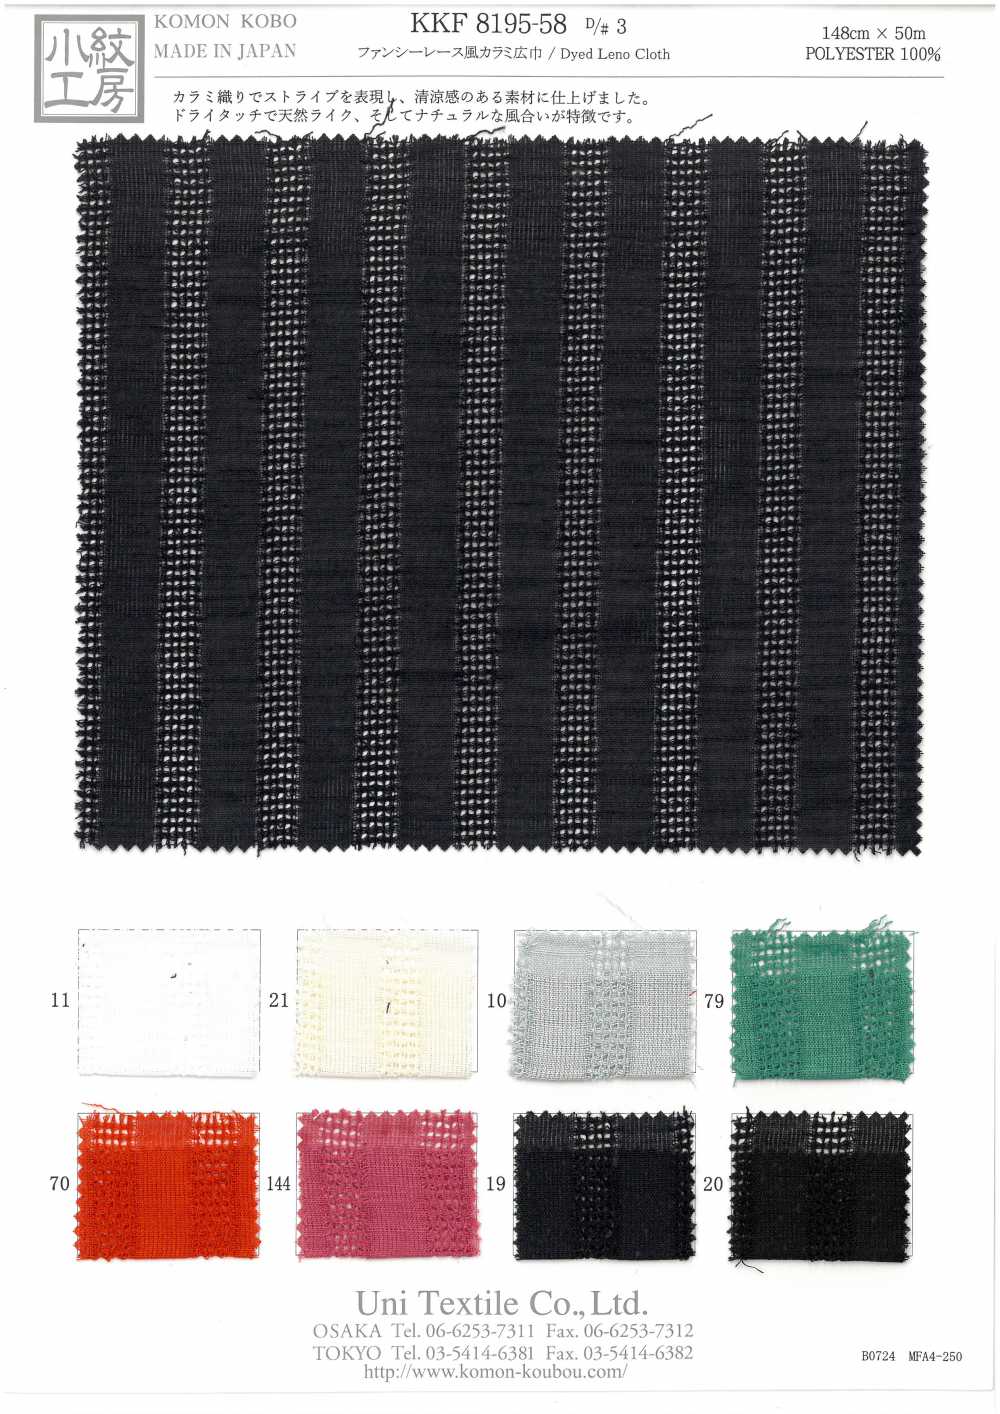 KKF8195-58-D/3 Tecido Leno Estilo Renda Fantasia[Têxtil / Tecido] Uni Textile